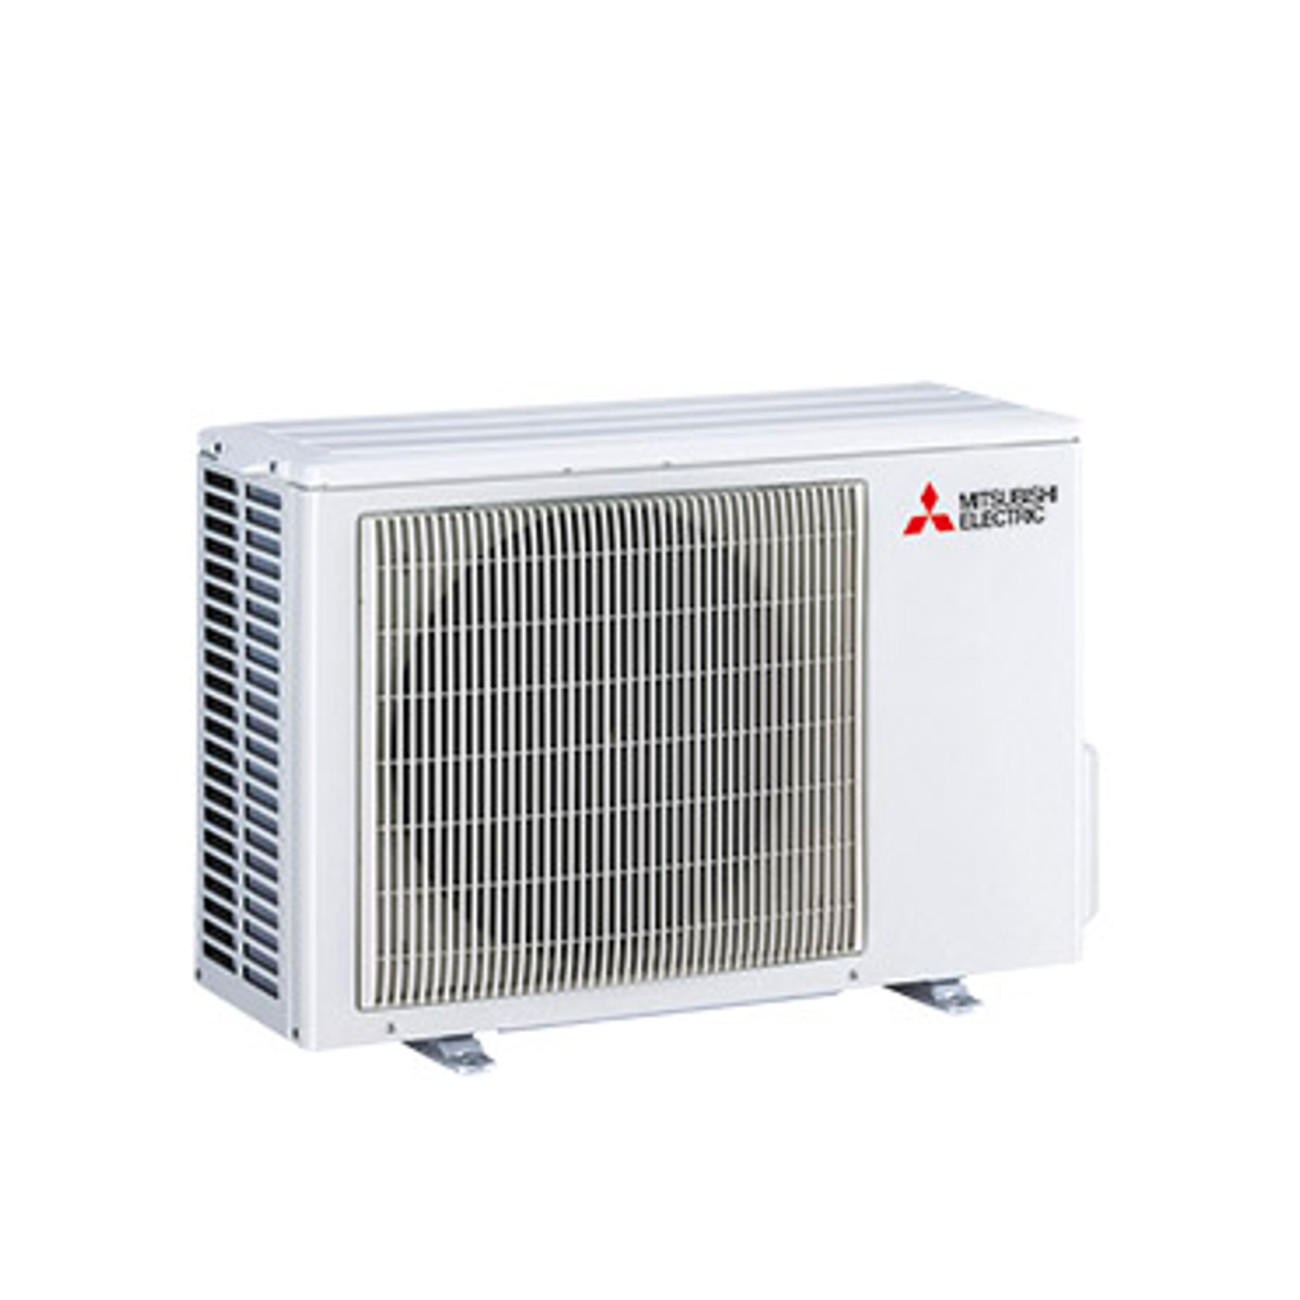 Mitsubishi Electric Klimaanlage Diamond - 2 kW Kühlen